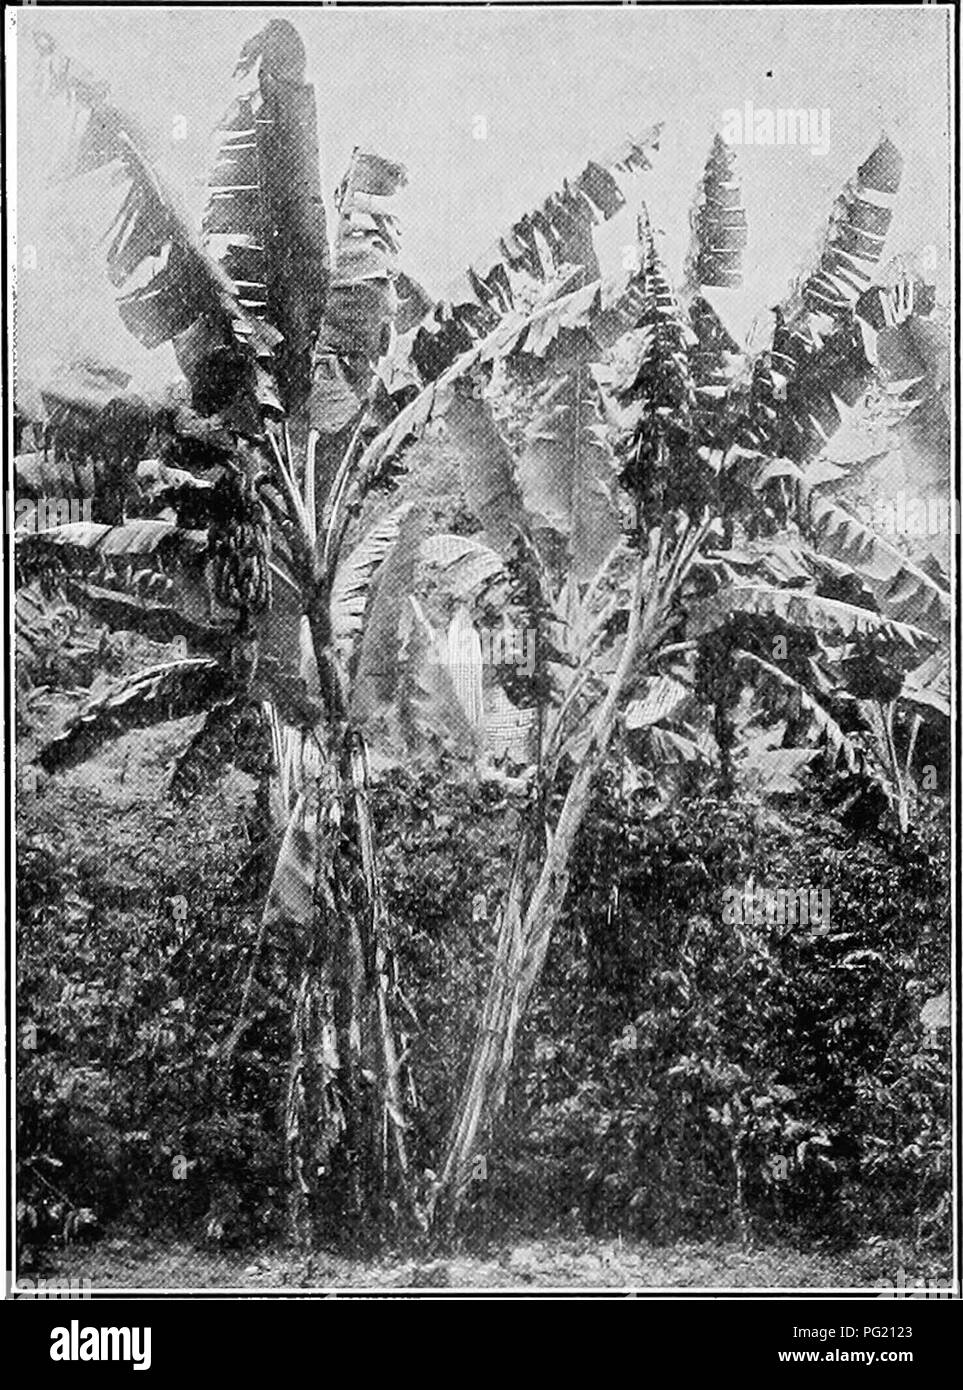 . Un manuel de botanique pour les collèges et universités ... La botanique. 585 feuilles de bananes (fig. 846) ; (2) des plantes vertes à larges feuilles rigides et, ce qu'on appelle la scleraphylls à larges feuilles, comme le chêne et le houx (fig. 809) ; (3) des plantes vertes avec raideur, l'aiguille, comme les feuilles, comme dans le pin et l'épicéa (fig- 955) ; (4) des plantes vertes, comme désert succulentes Agave (fig. 921) ; et (5) arbres sans feuilles, comme le cactus (fig. 1035) et de l'éphédra. Une transition vers de- ciduous arbres est vu dans le potentiel jamais- verts, comme l'Ilex decidua, qui, bien que les feuillus dans les états du nord (tel que suggéré par th Banque D'Images